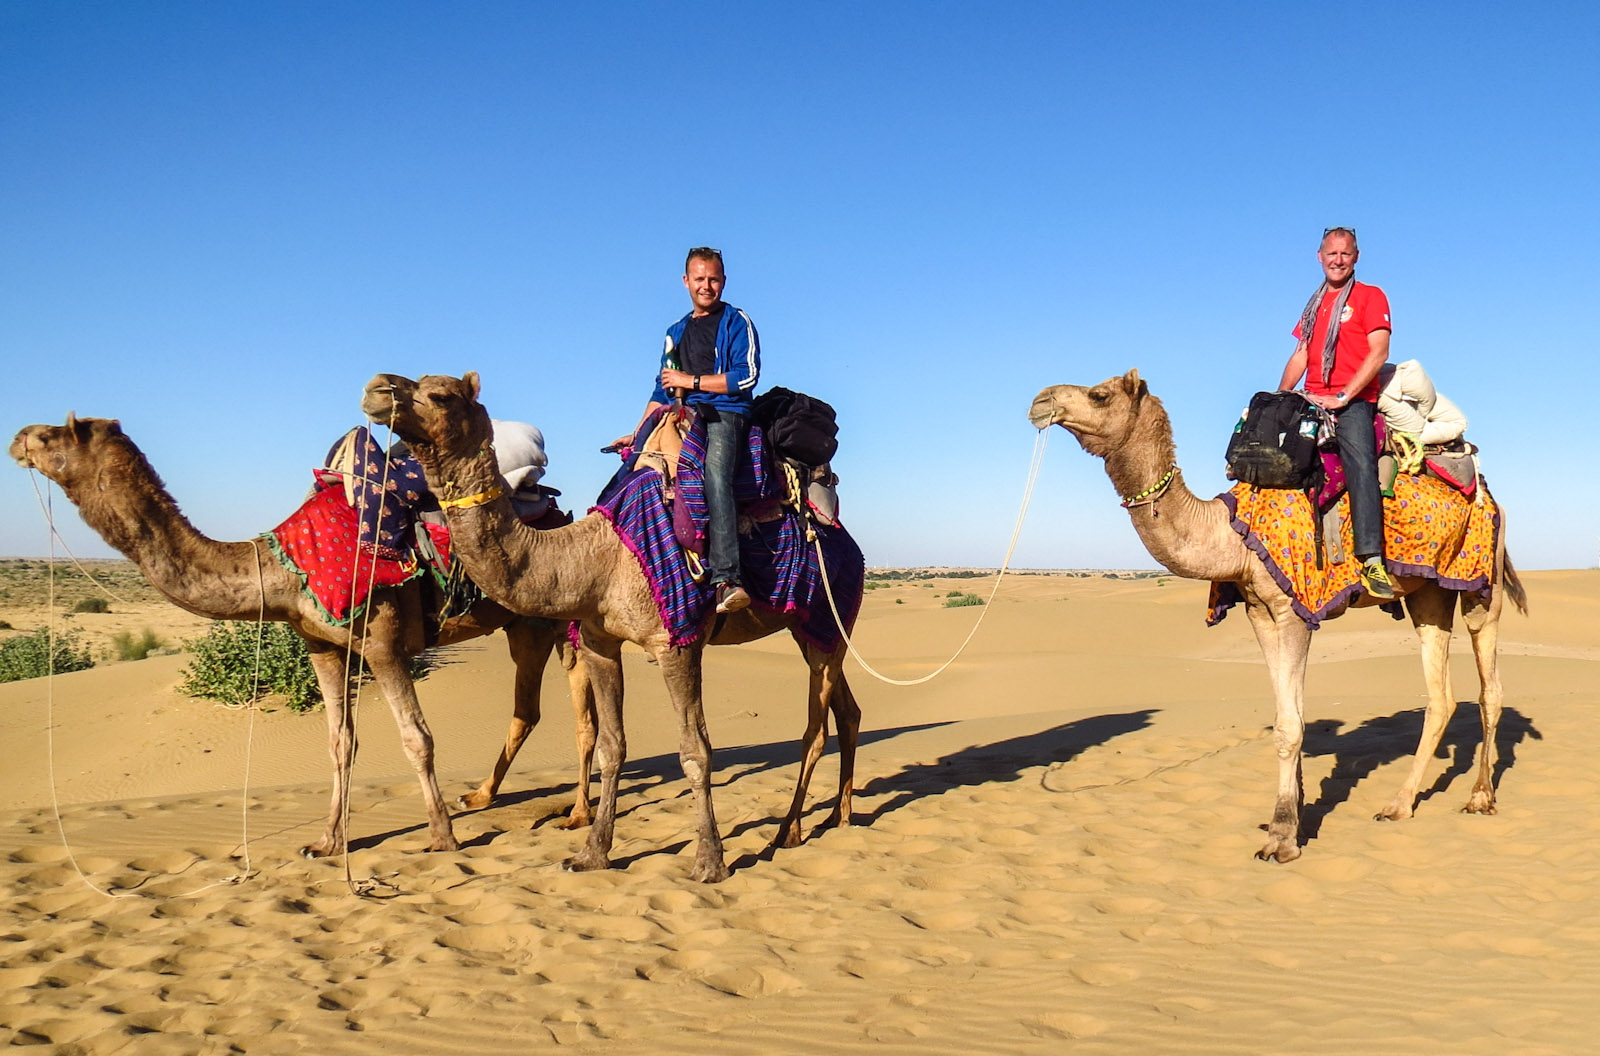 flashpackers-pose-aloft-camels-jaisalmer-desert